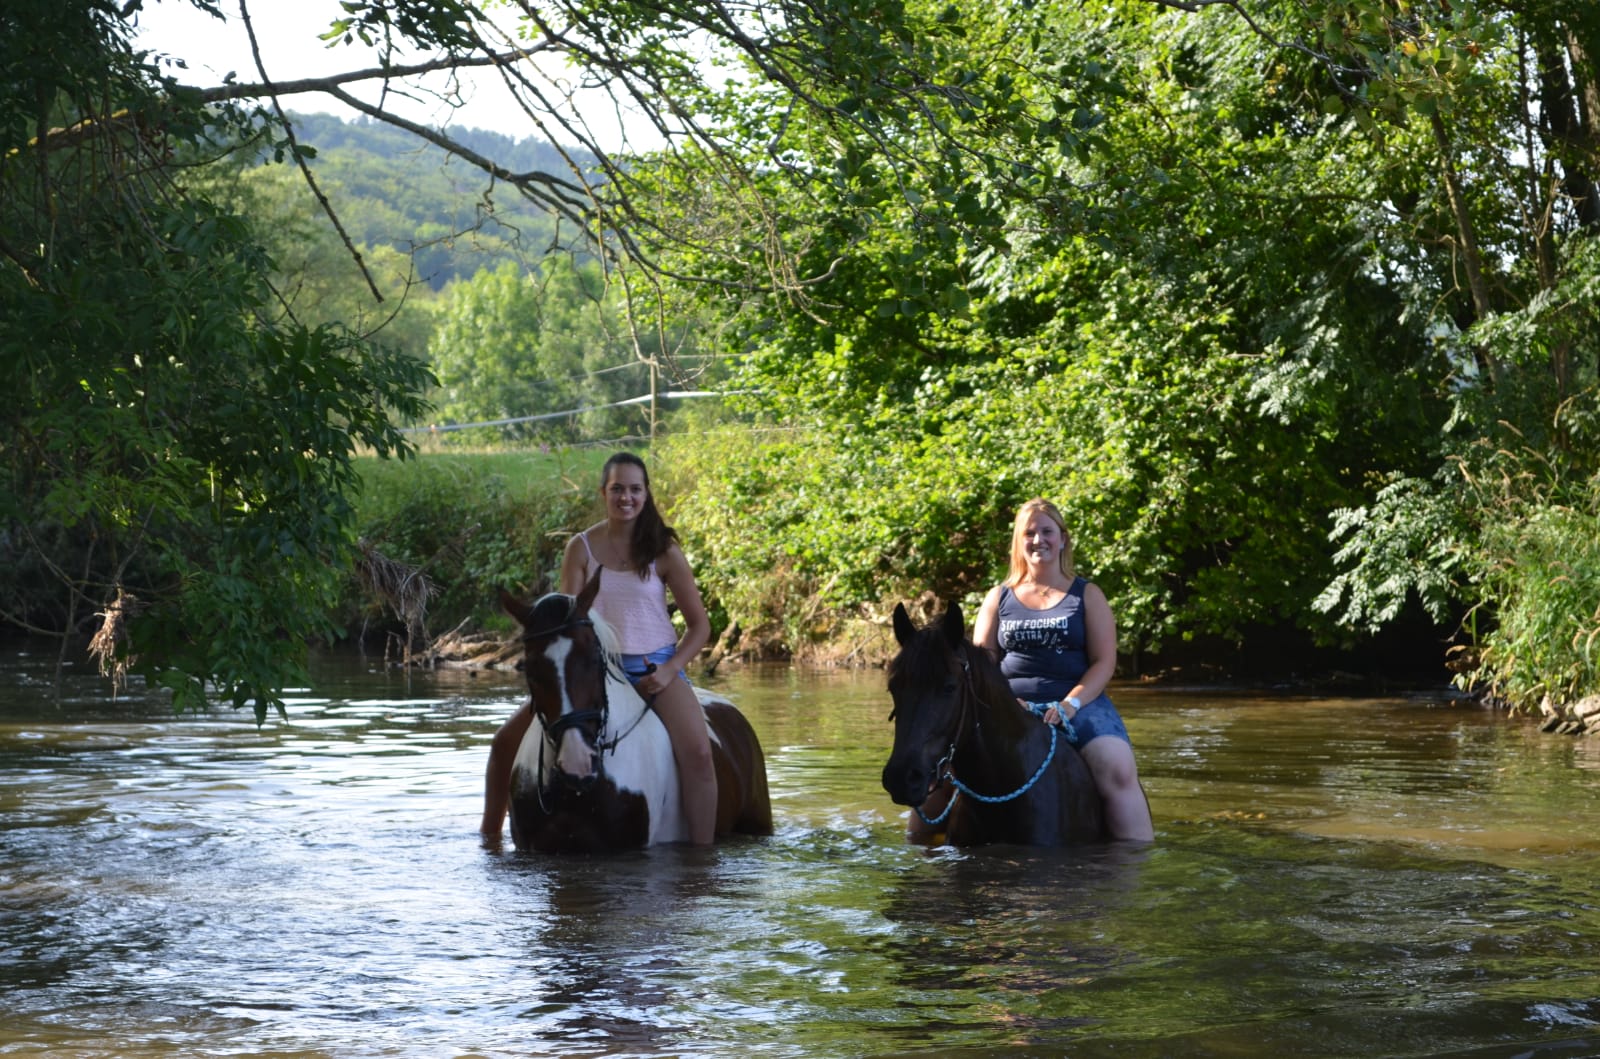 Zwei Mädchen reiten auf zwei Pferden durch einen Bach